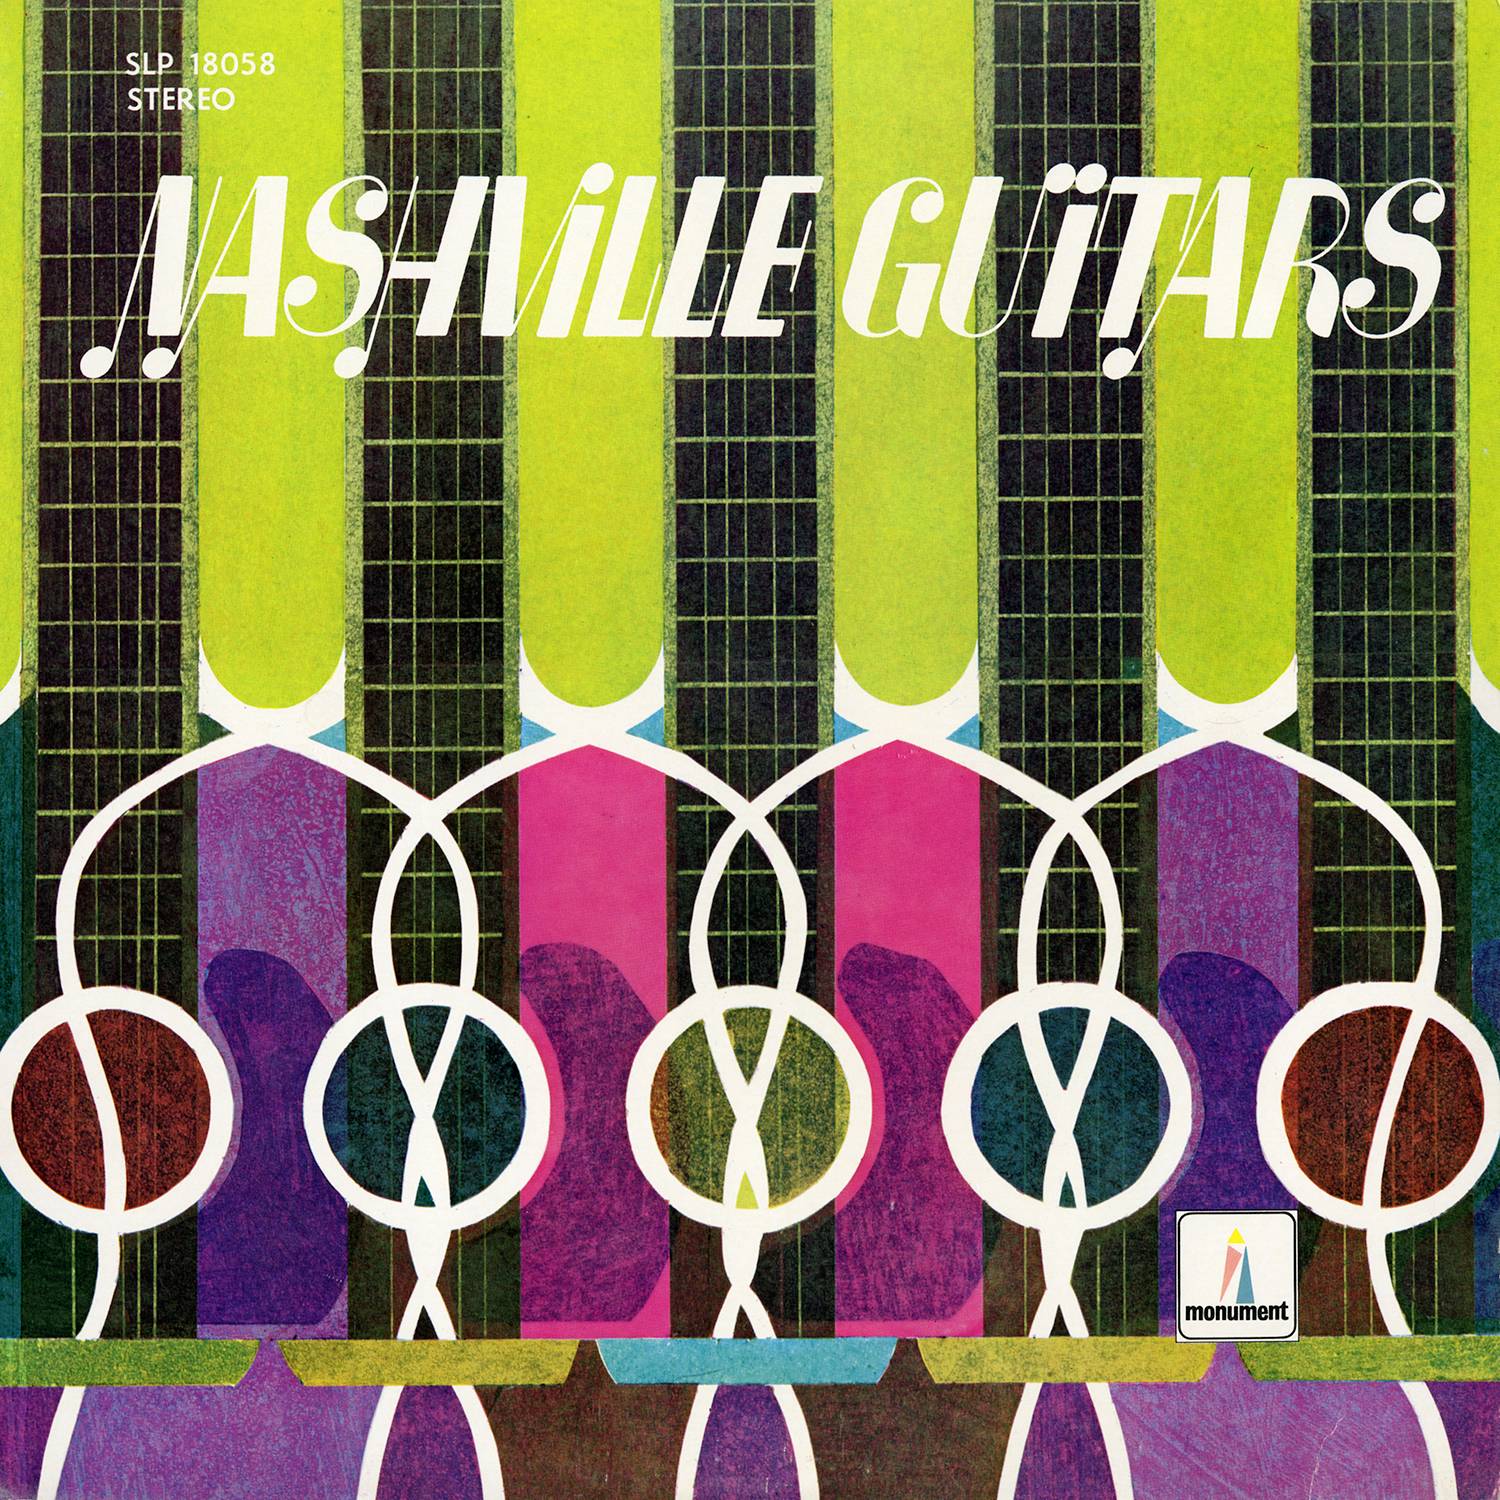 The Nashville Guitars - Nashville Guitars (1966/2016) [AcousticSounds FLAC 24bit/192kHz]